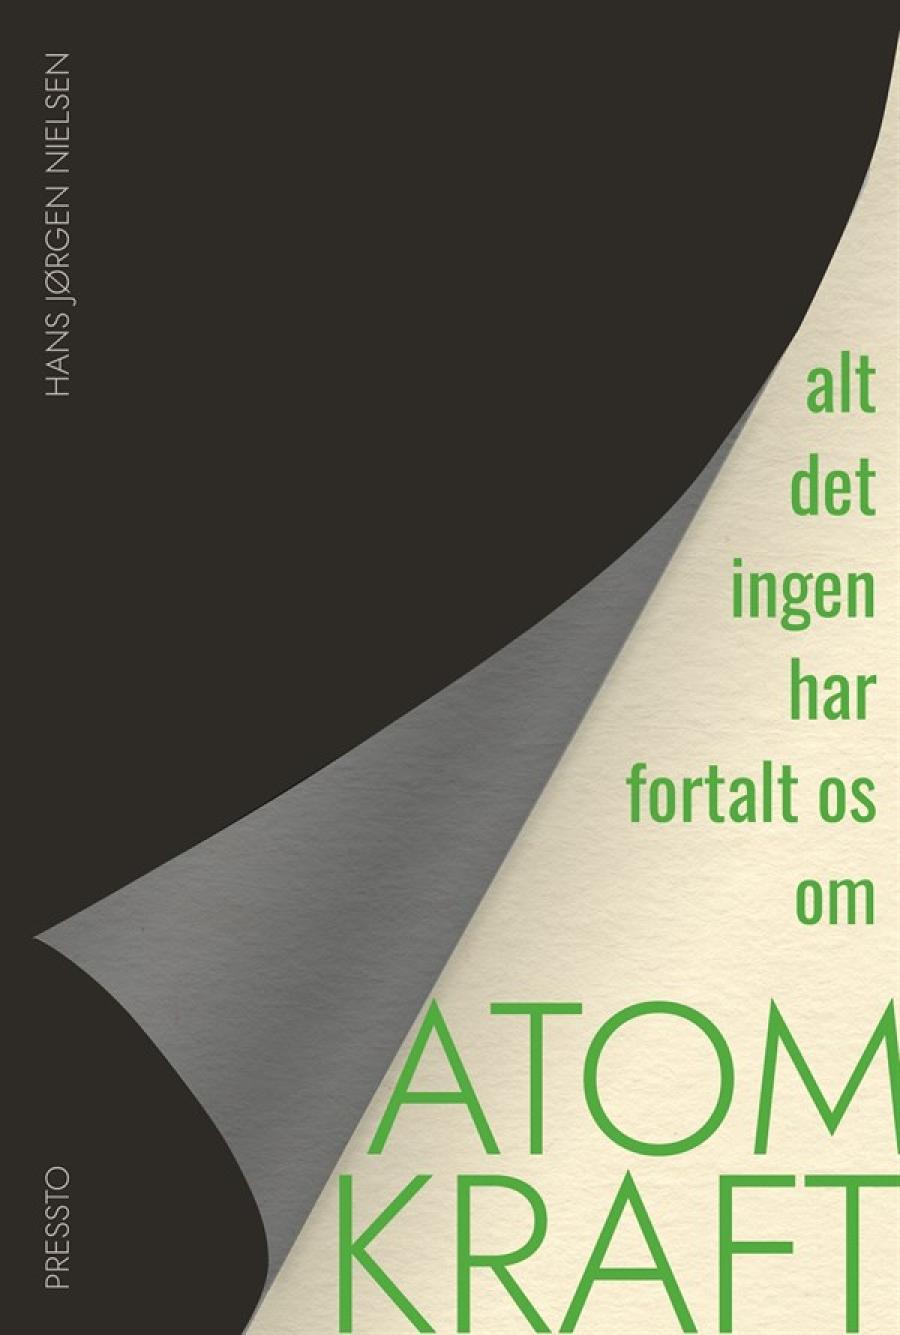 Forside af: "Alt det ingen har fortalt os om atomkraft" af Hans Jørgen Nielsen